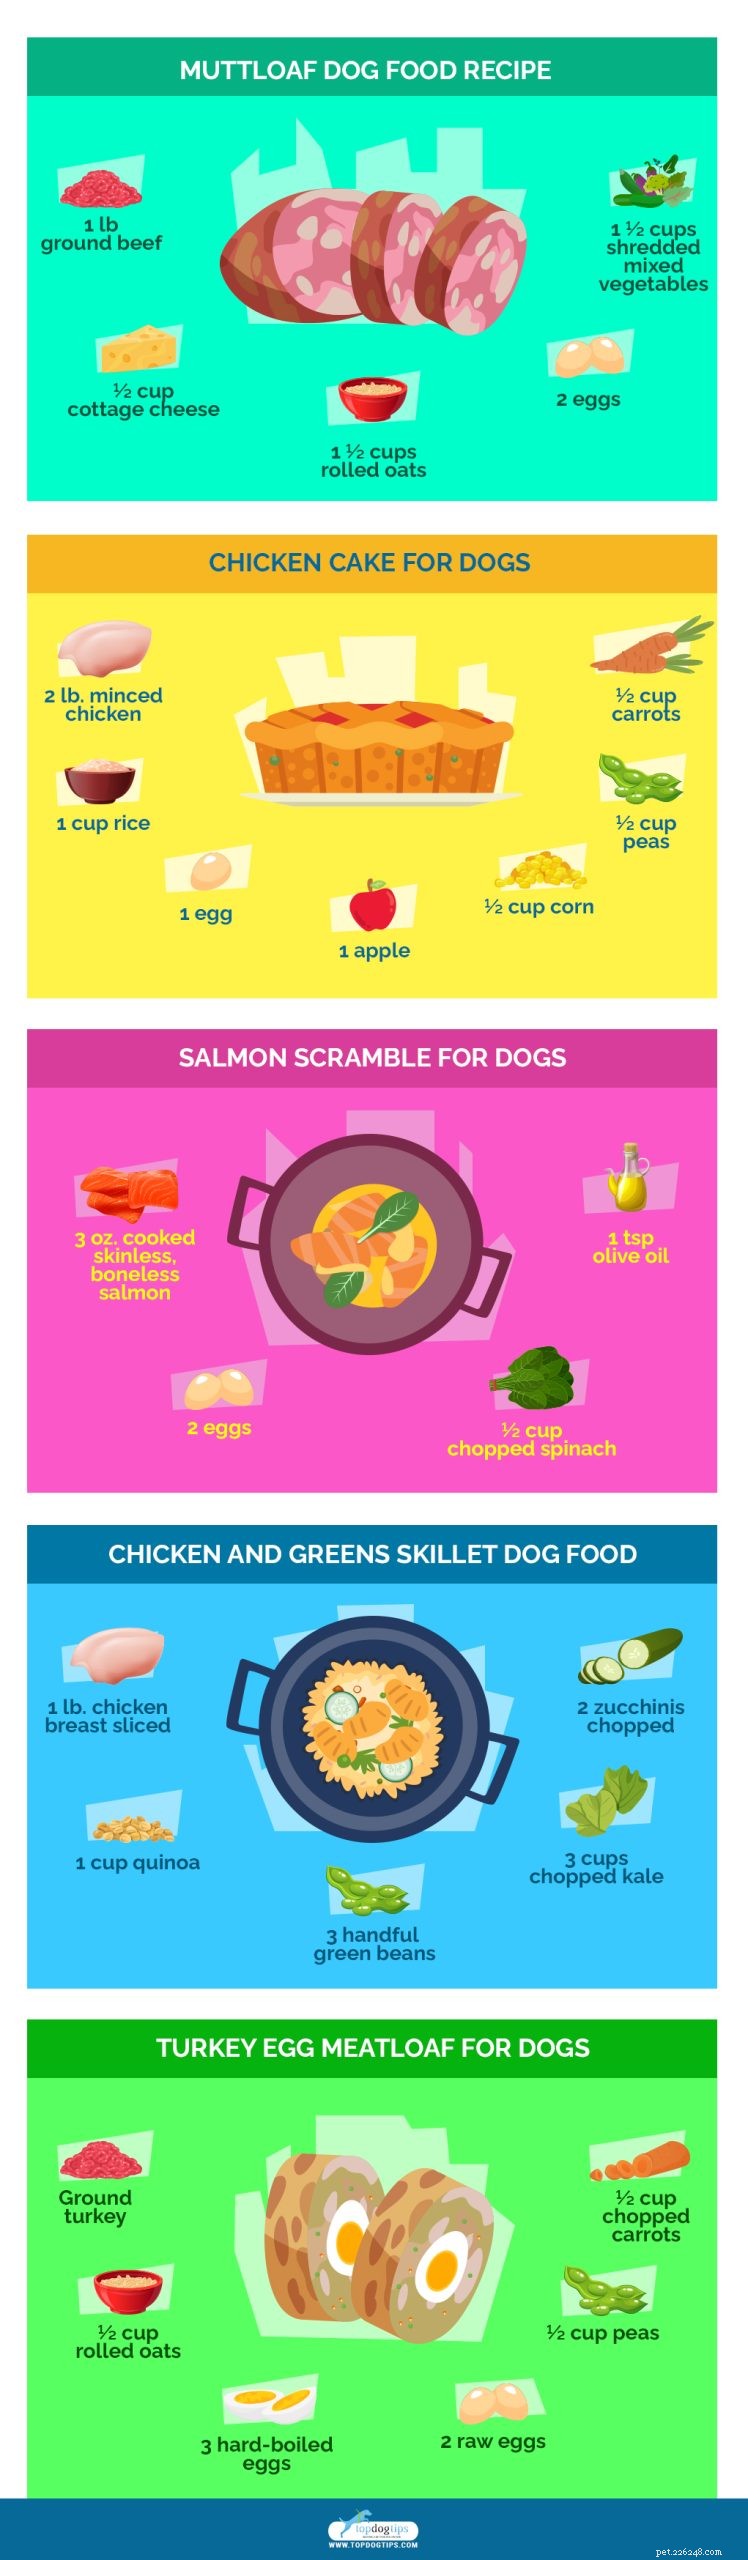 20 recettes de nourriture maison pour chiens les plus saines